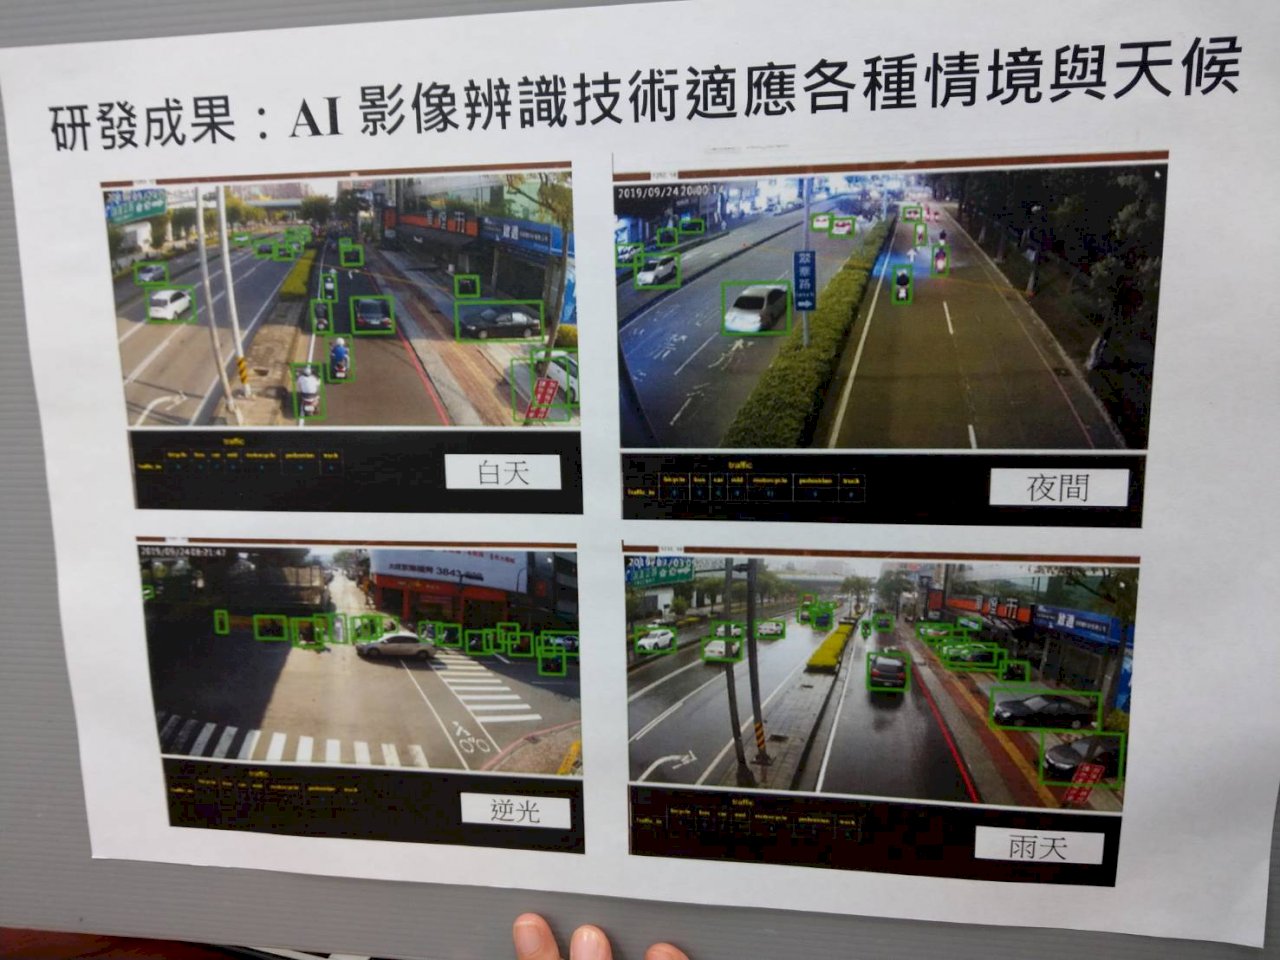 台灣交通科技再升級 AI影像辨識技術 吸引國際矚目